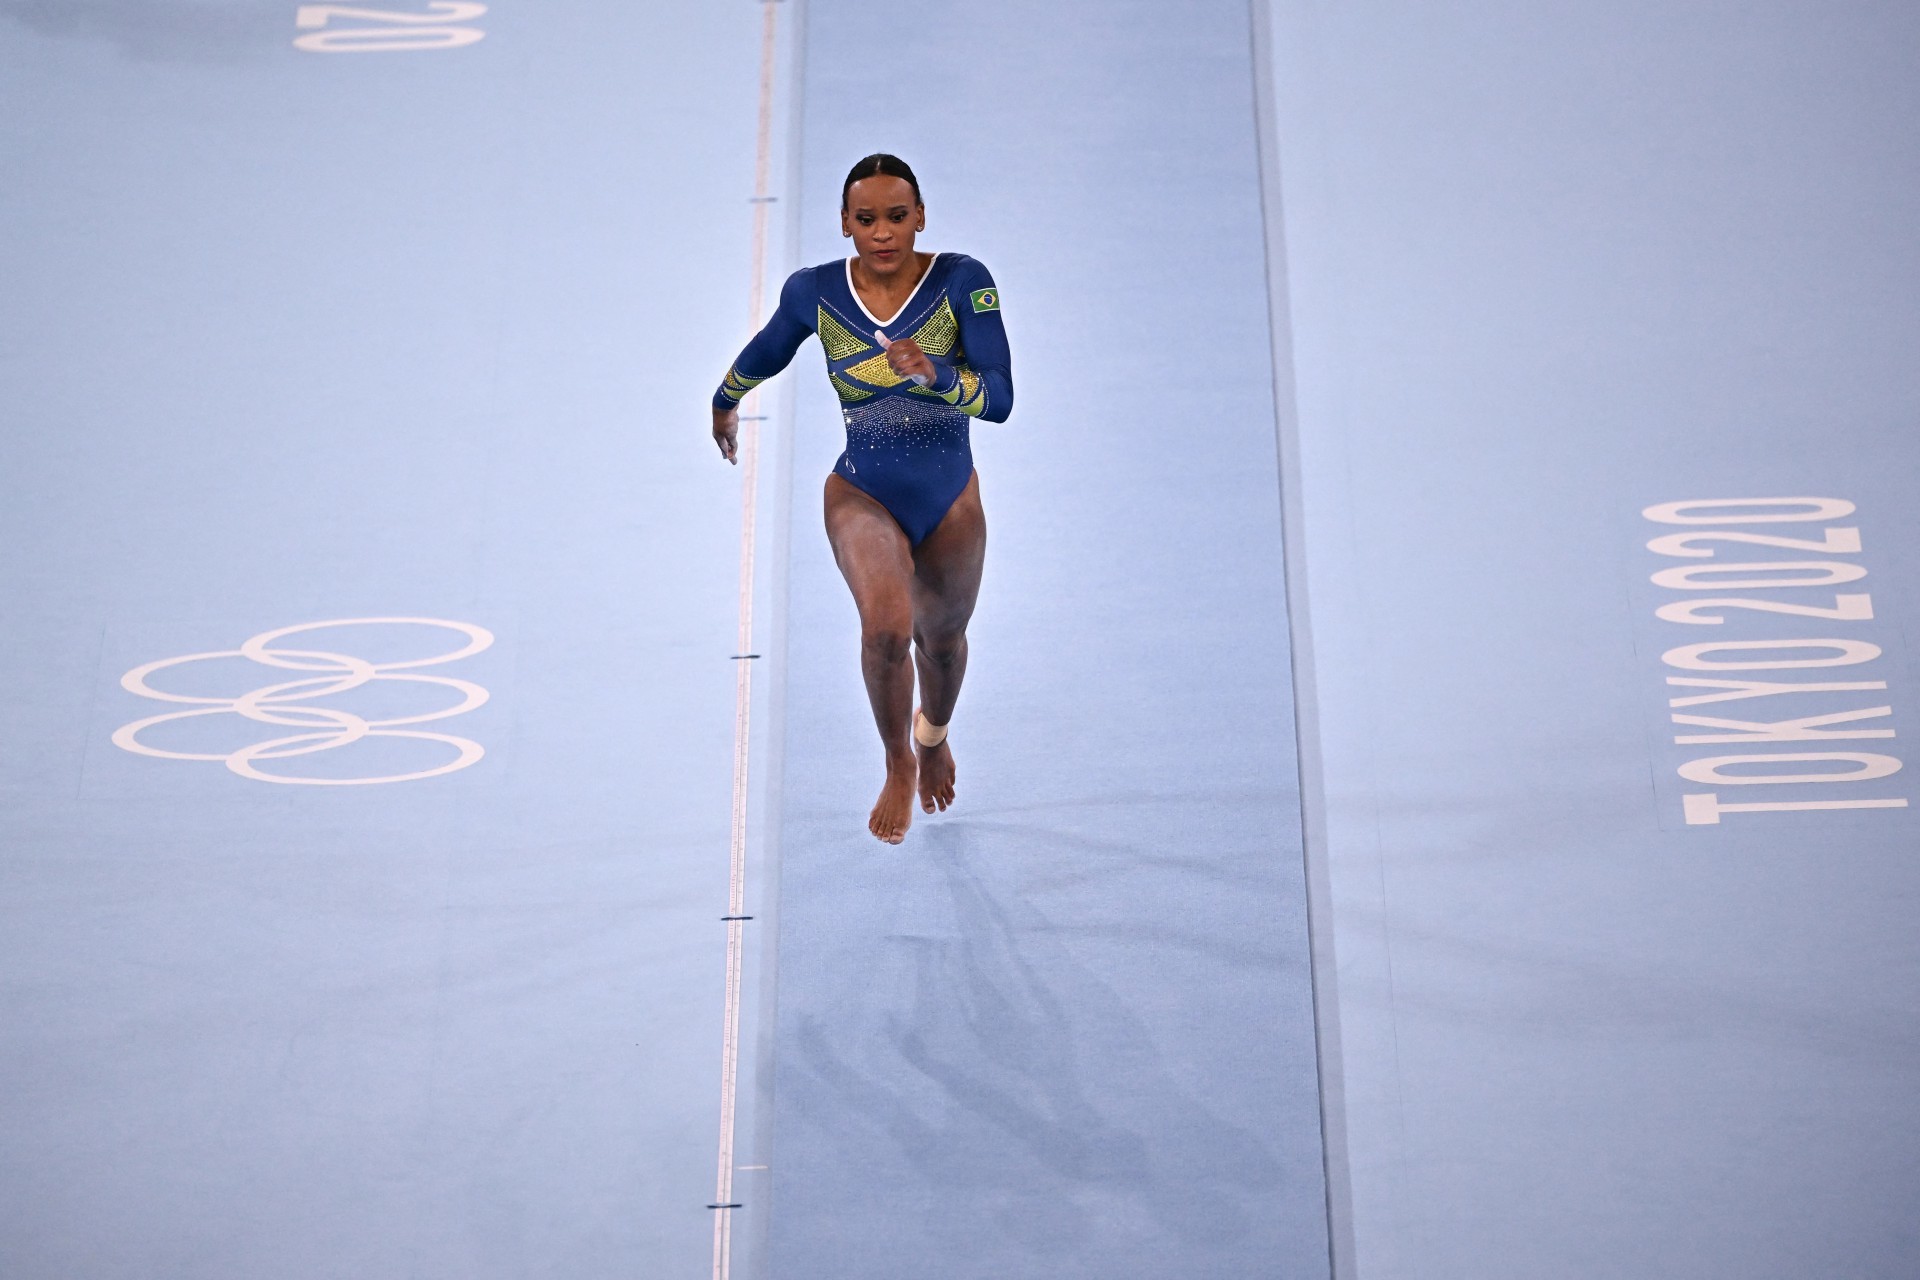 A brasileira Rebeca Andrade compete no evento de salto durante os Jogos Olímpicos de Tóquio 2020, no Ariake Gymnastics Center, em Tóquio, em 29 de julho de 2021. (Foto: Lionel BONAVENTURE / AFP)